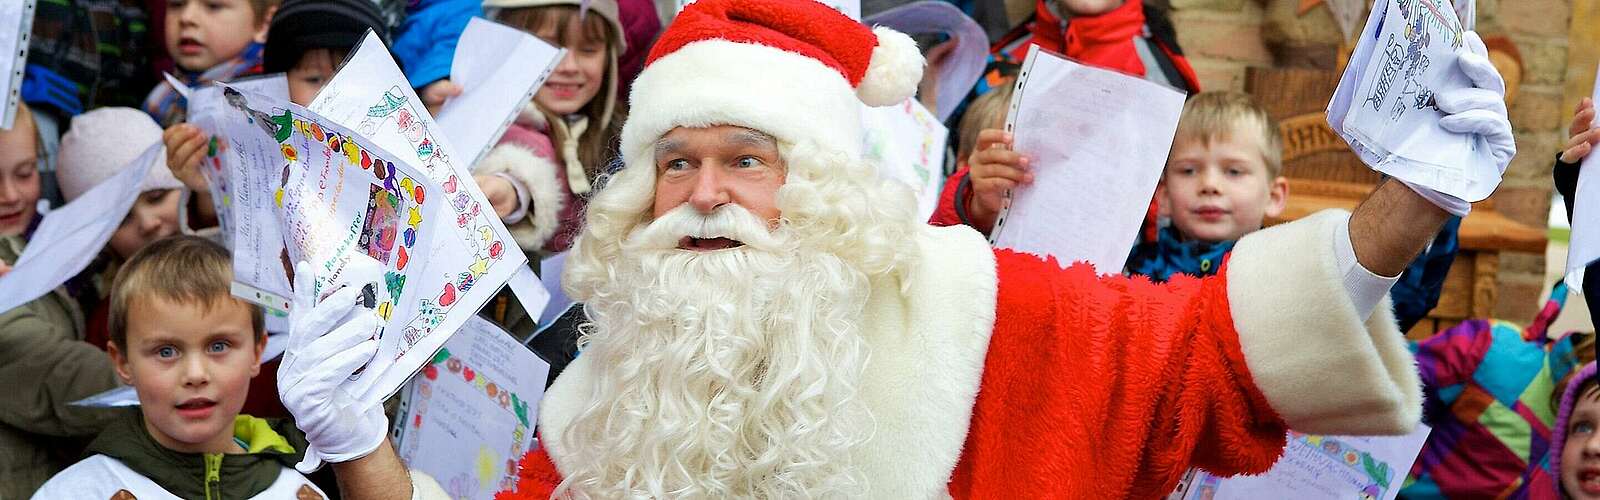 Post für den Weihnachtsmann,
        
    

        Foto: Deutsche Post DHL/Kein Urheber bekannt